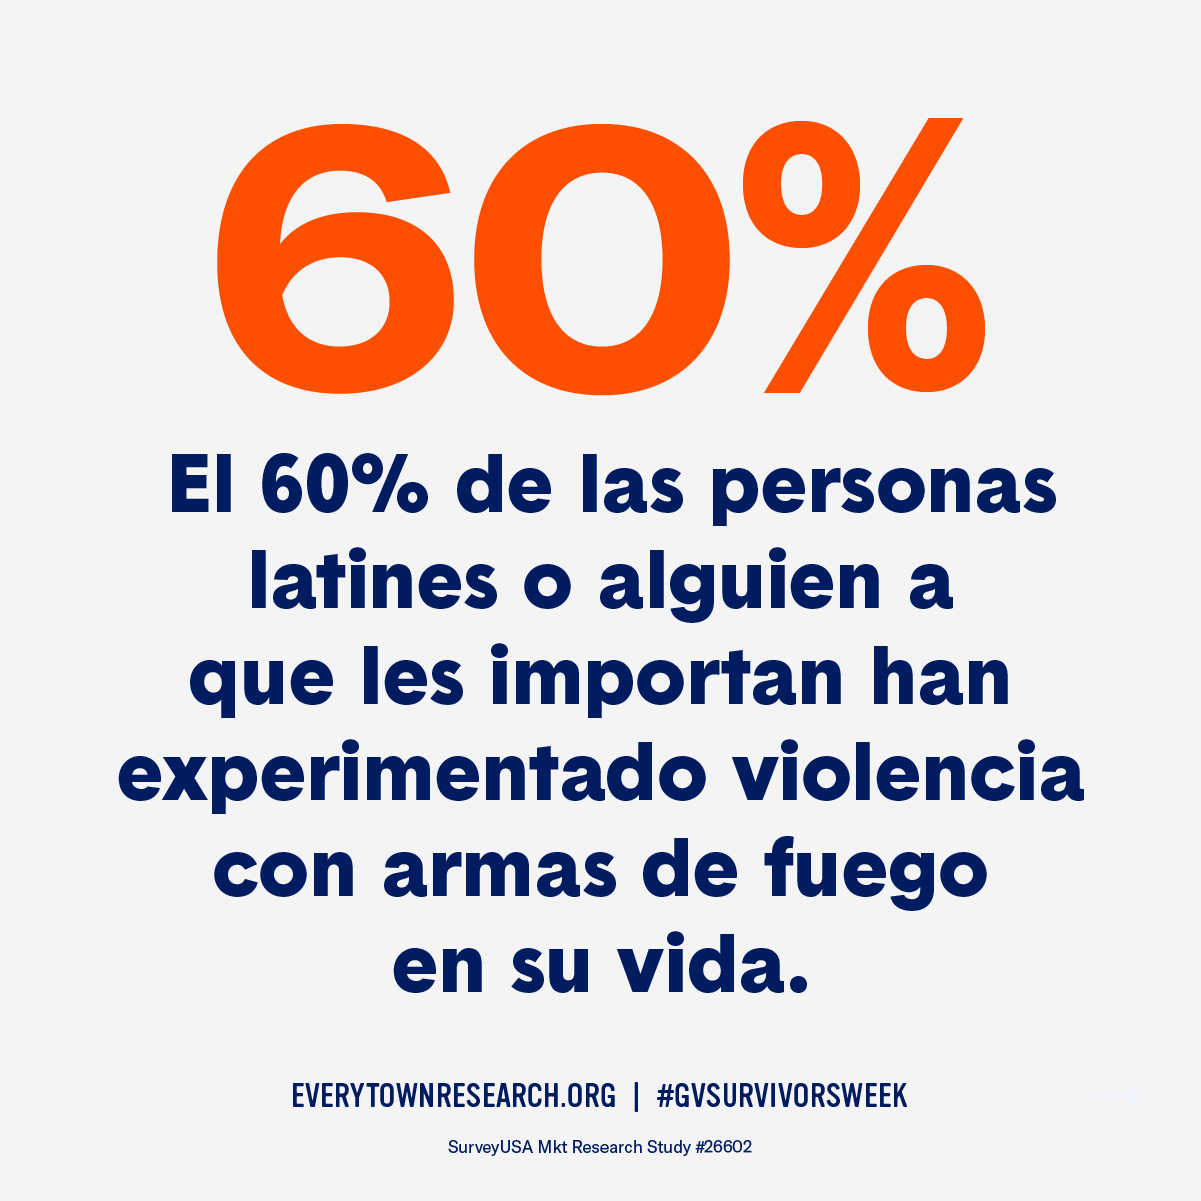 El 60% de las personas latines o alguien a que les importan han experimentado violencia con armas de fuego en su vida.